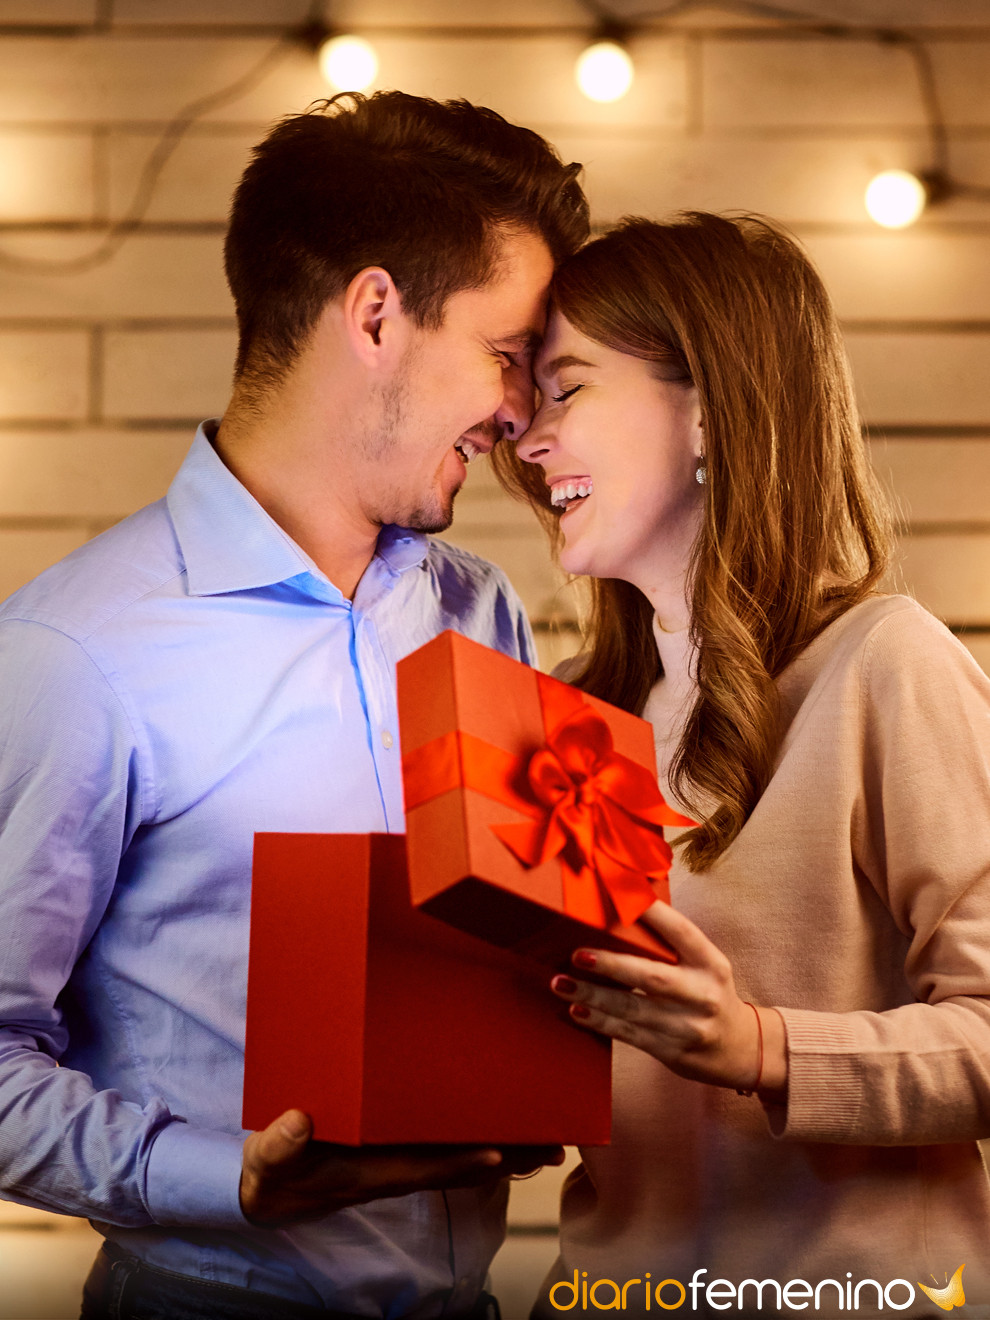 Primer San Valentín juntos: ¿regalar o no regalar a tu nueva pareja?